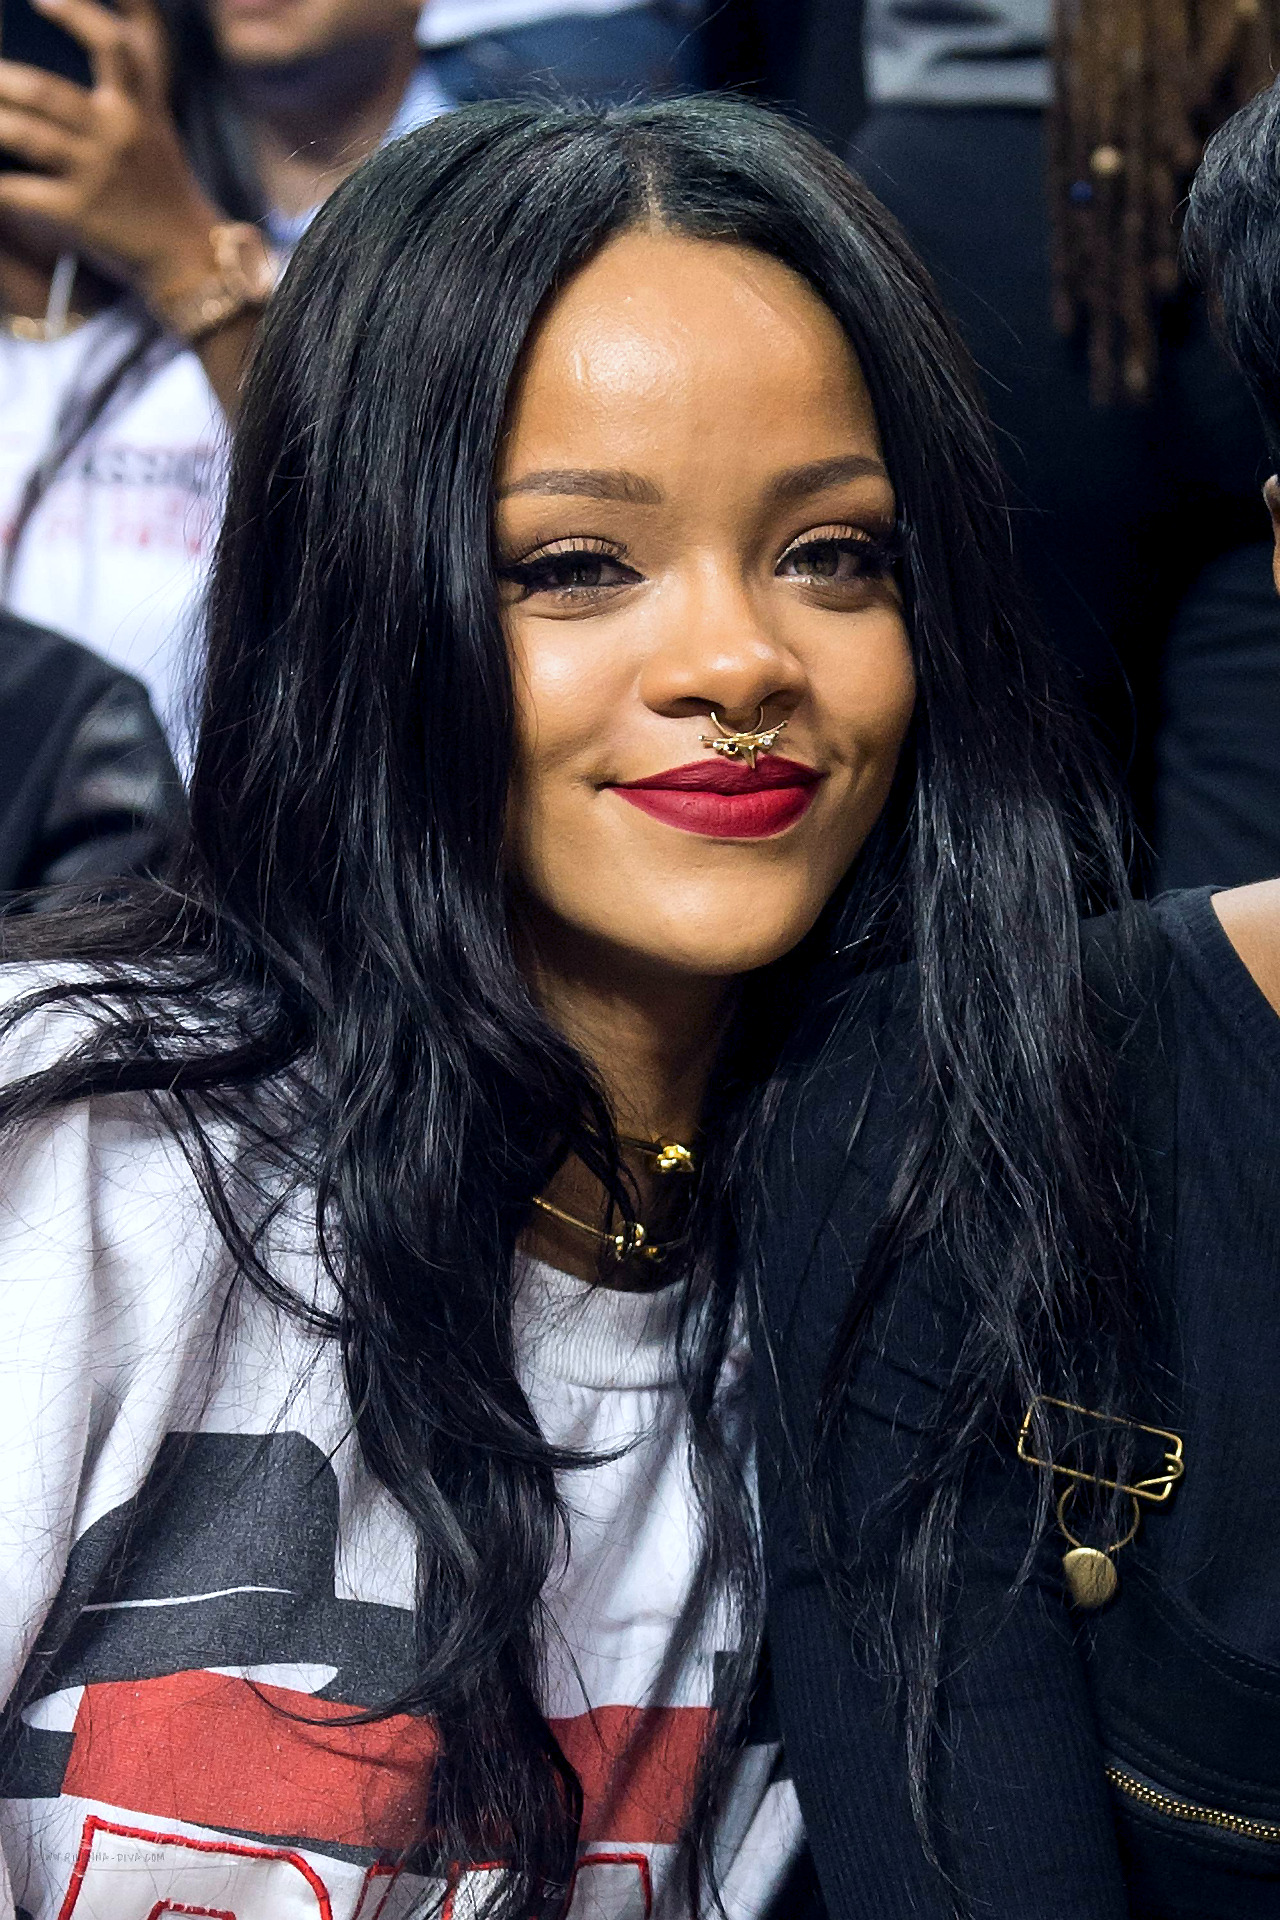 Fotos de Rihanna (apariciones, conciertos, portadas...) [15] - Página 2 Tumblr_napbuxhOPx1t17ssjo1_1280